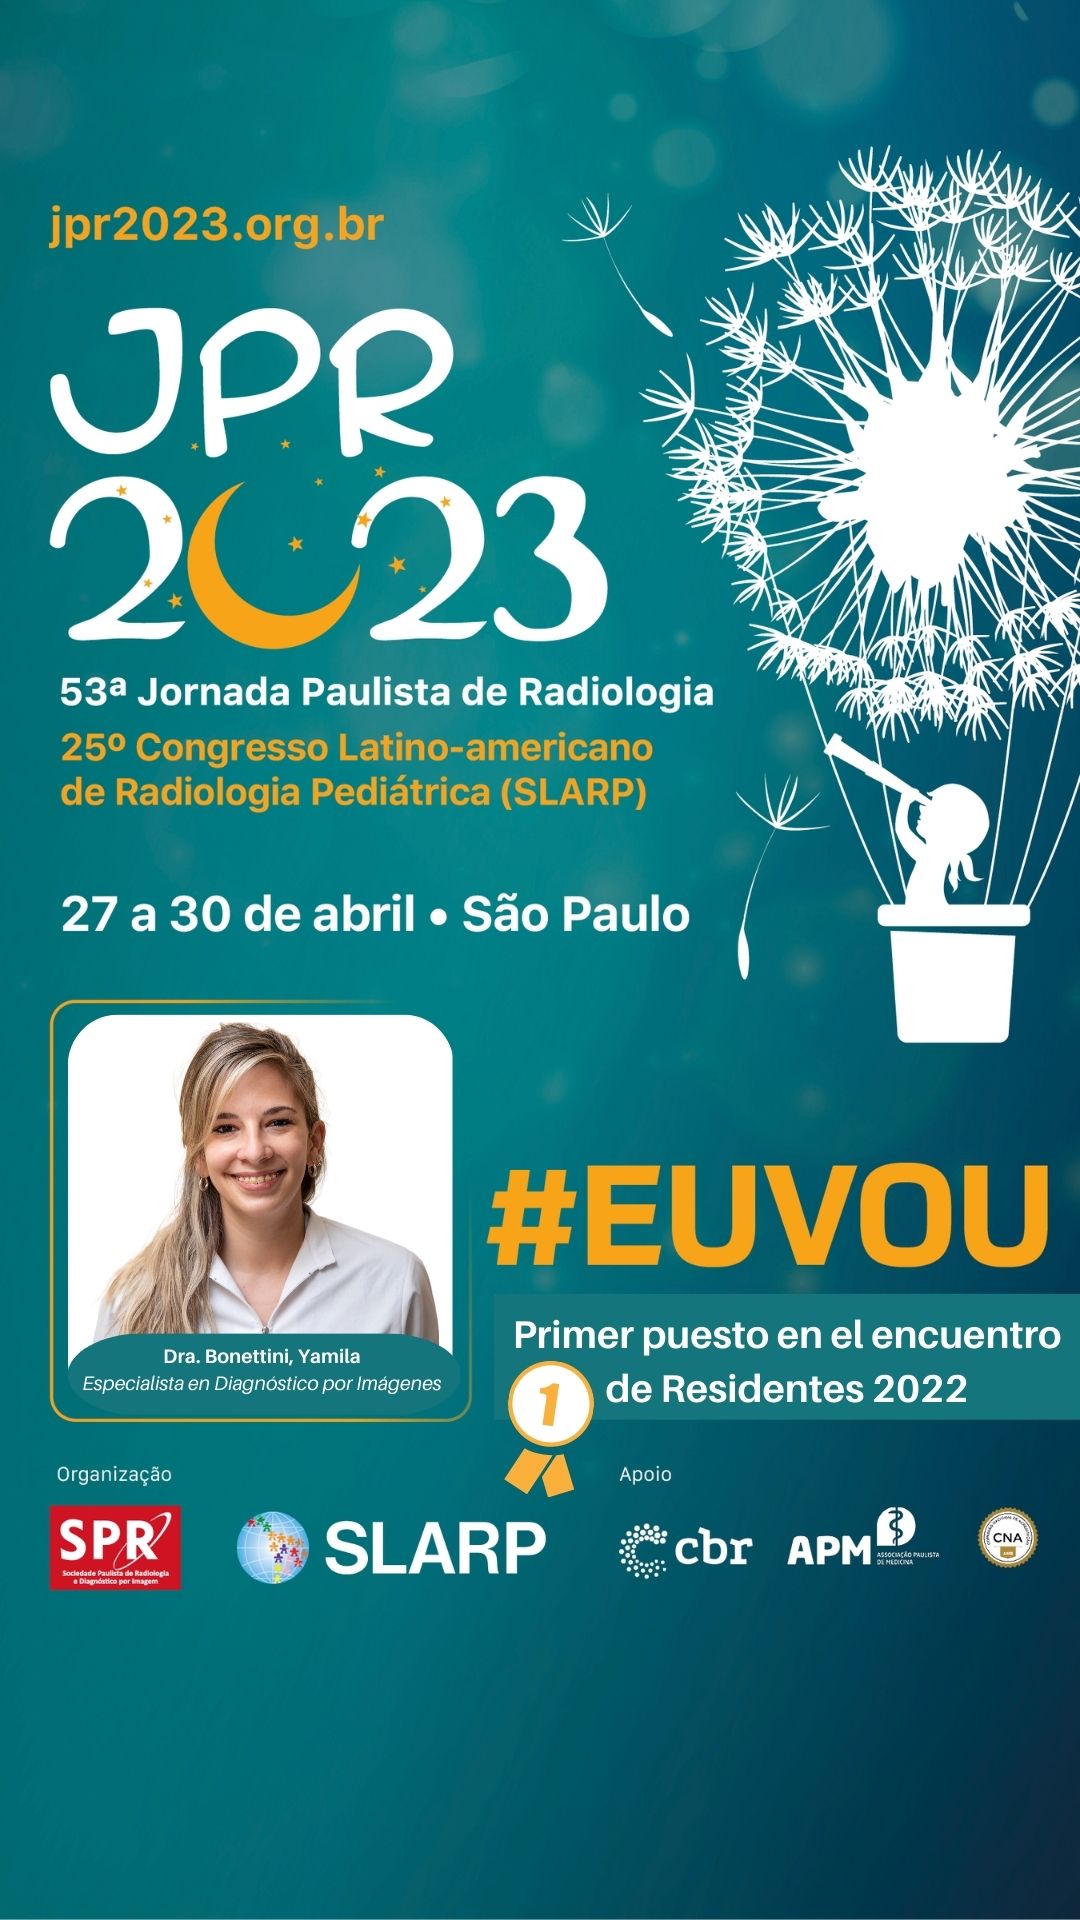 JPR 2023 en Brasil